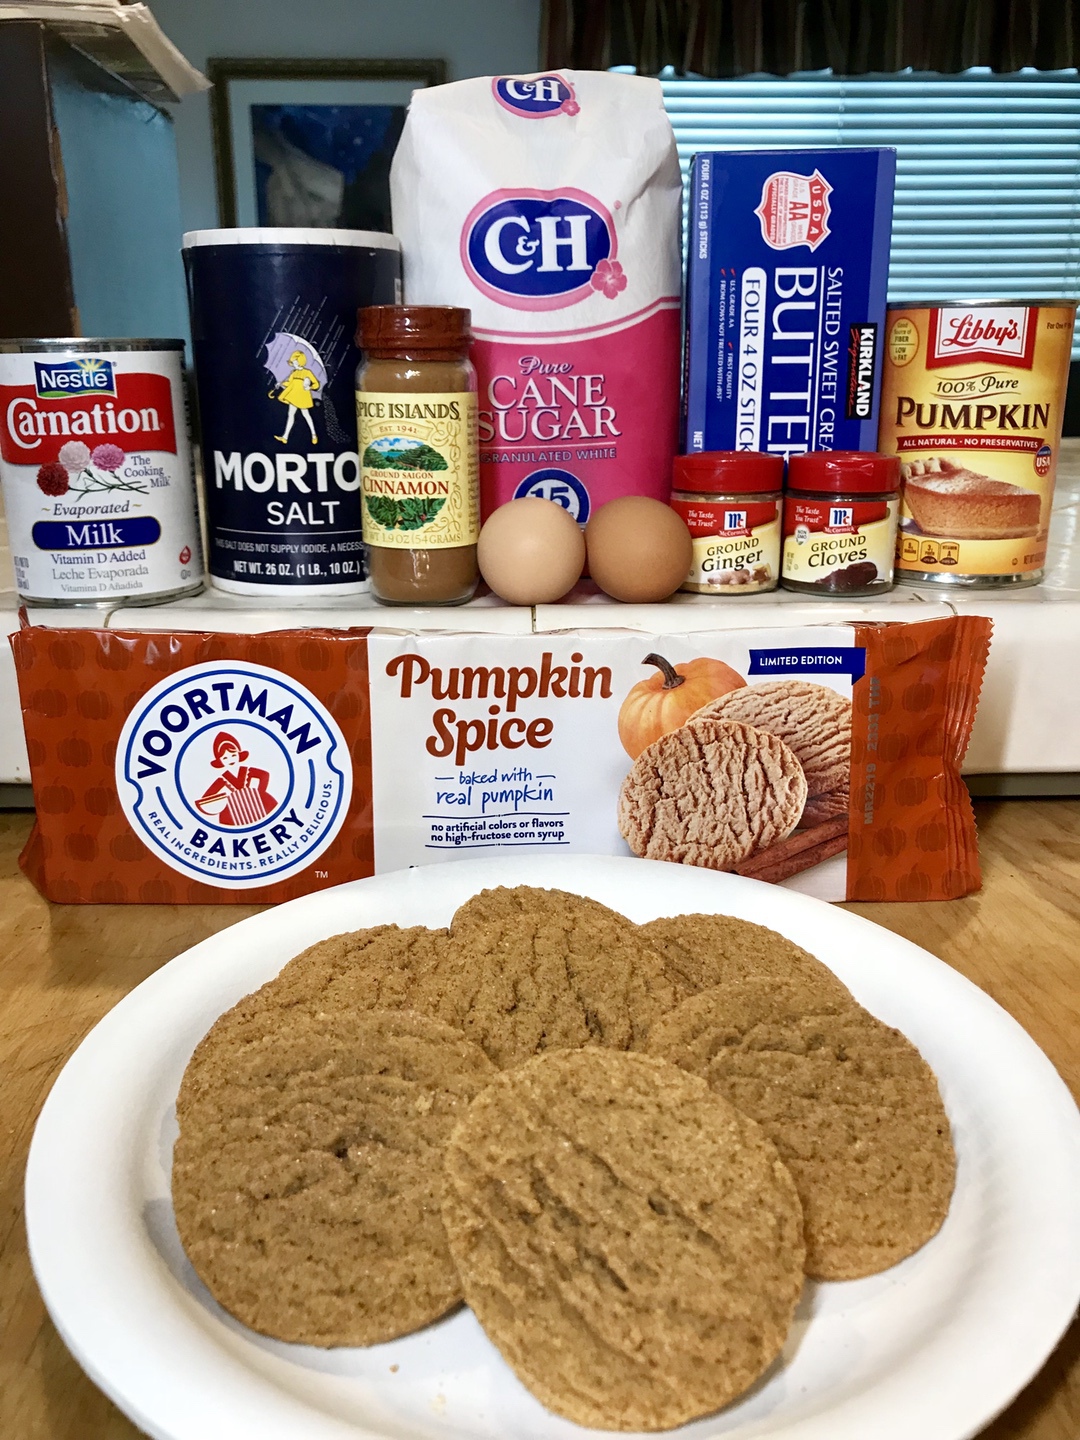 Voortman Pumpkin Pie Bites Recipe #Voortman #pumpkin #pumpkinpie #recipe #food #foodie #blog #blogger #ad